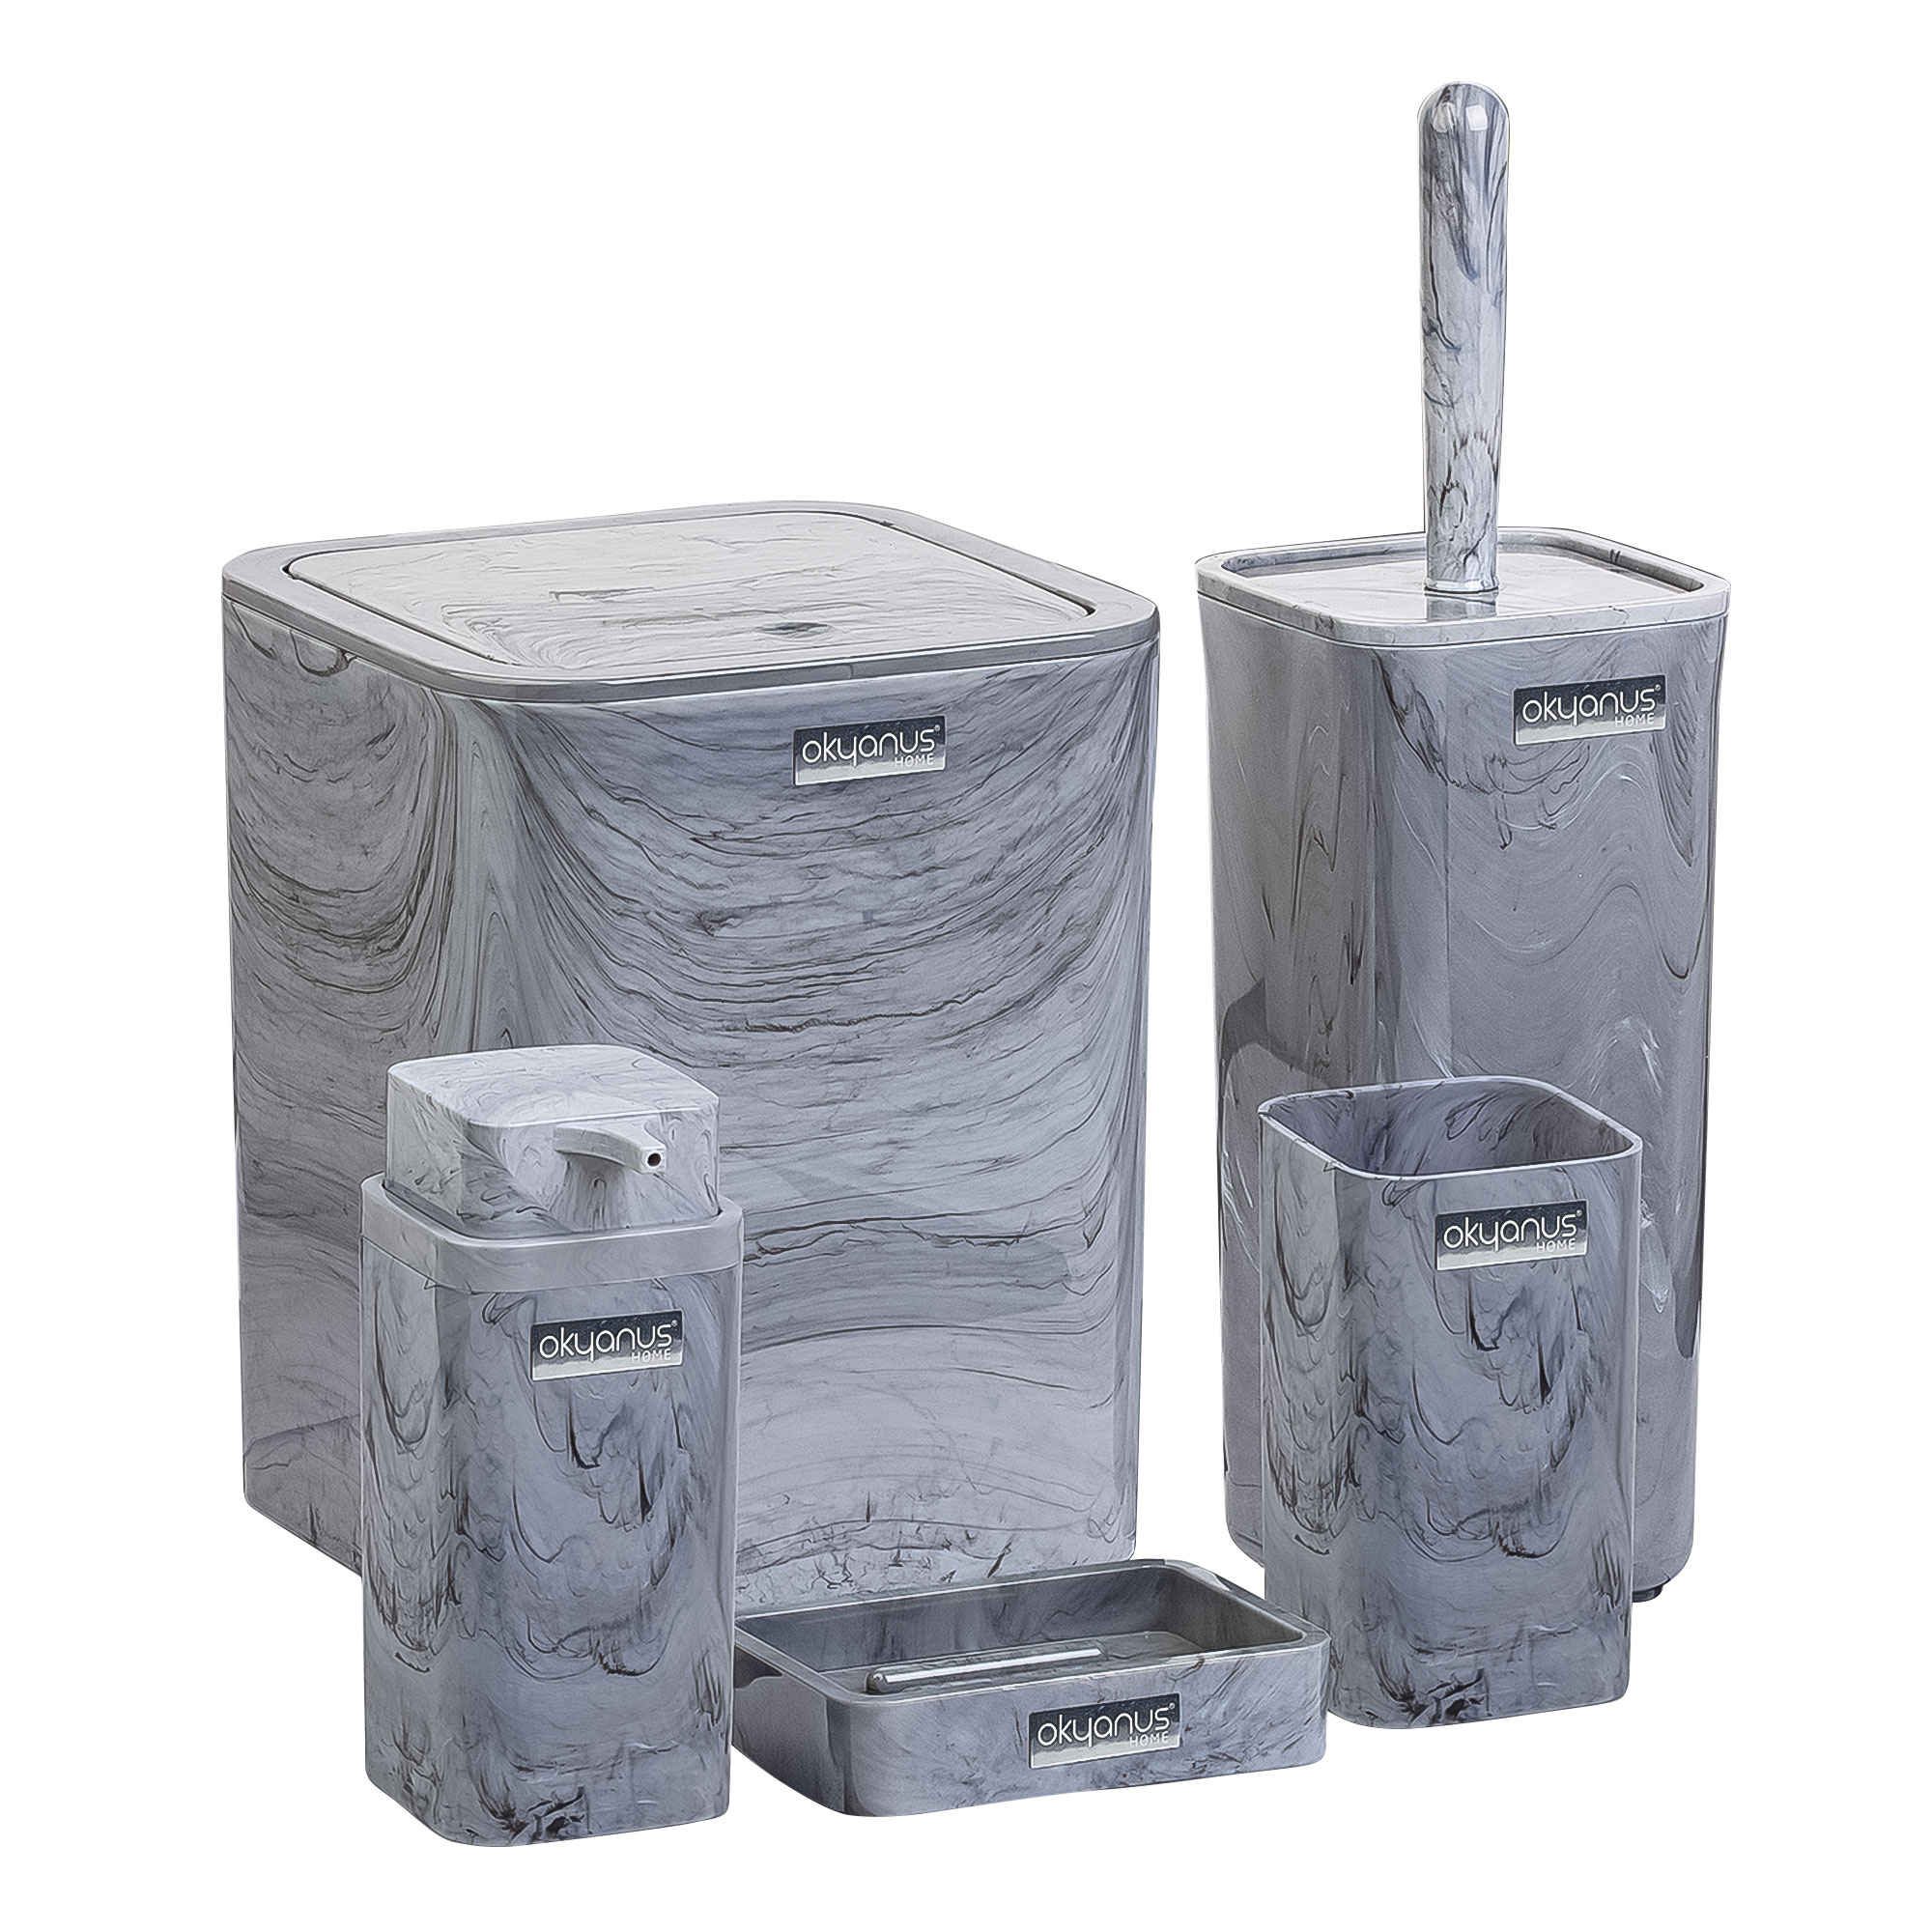 Набор аксессуаров для ванной Ag concept 5 предметов серый мрамор набор аксессуаров fixsen metra 5 предметов